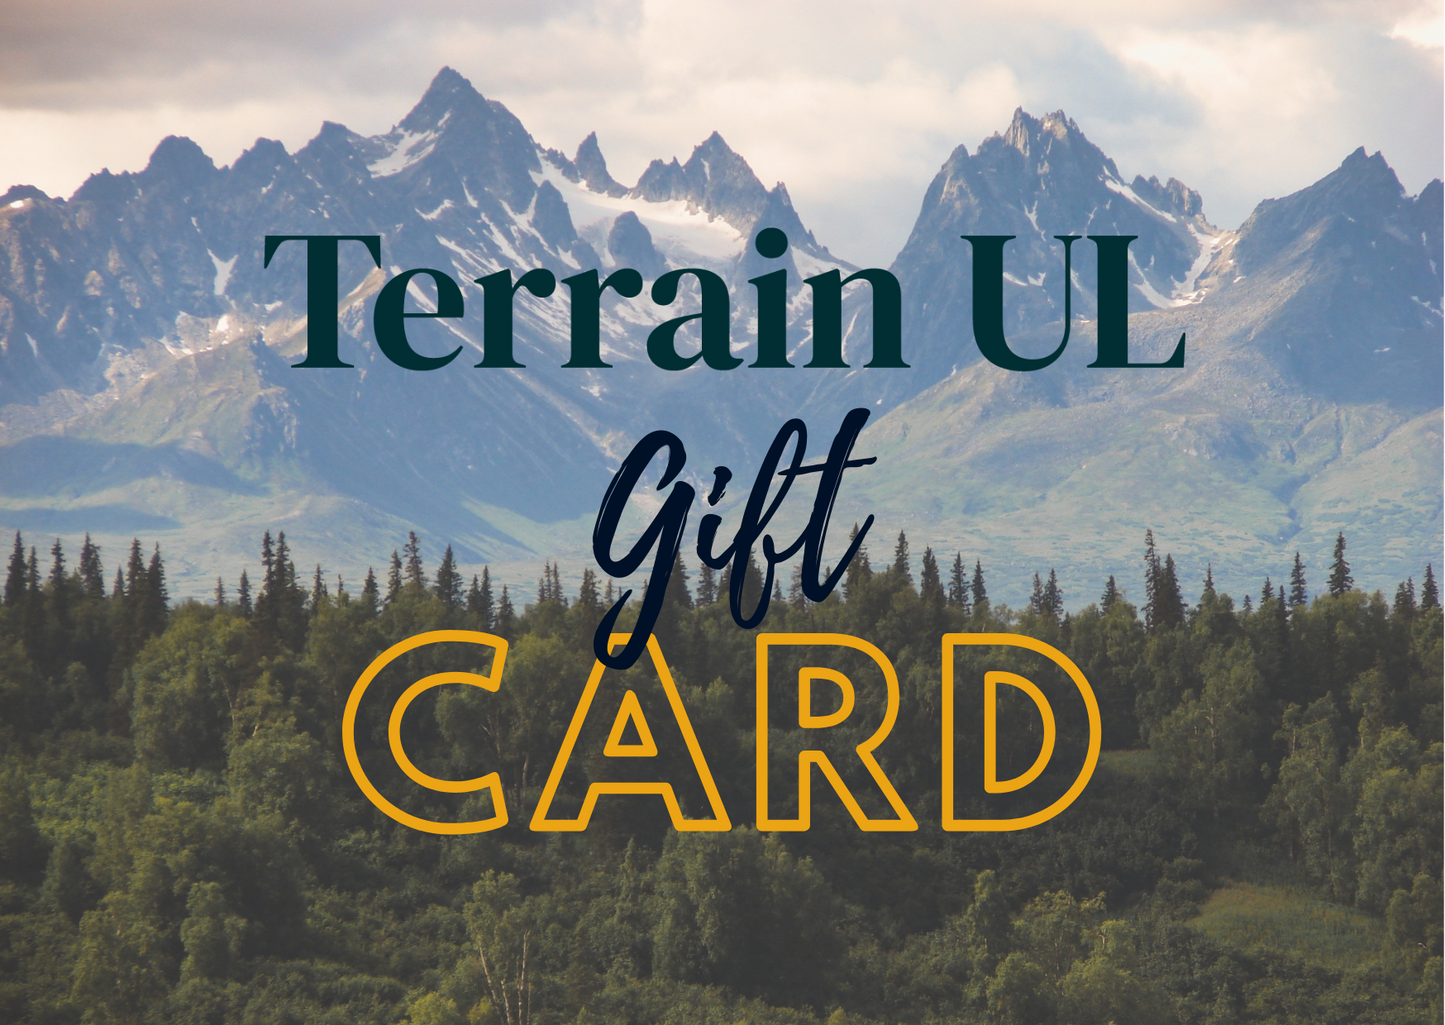 Terrain UL Gift Card